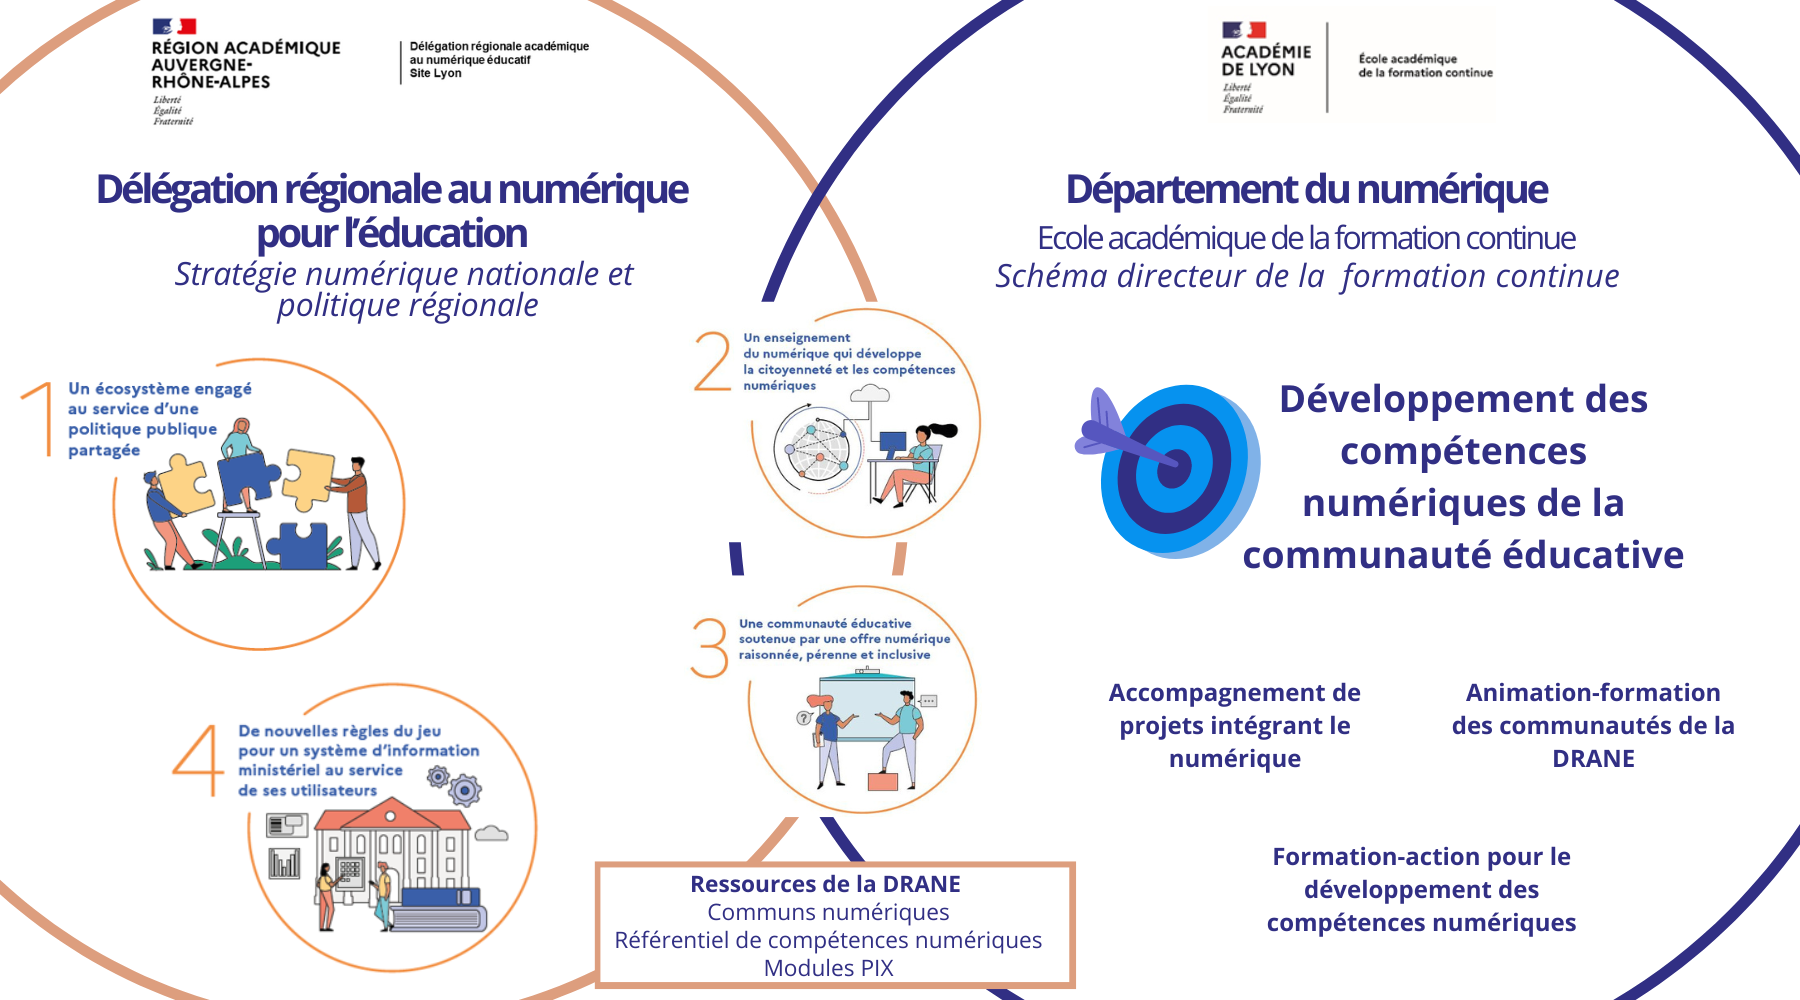 Schéma de la collaboration DRANE-département numérique de l'EAFC